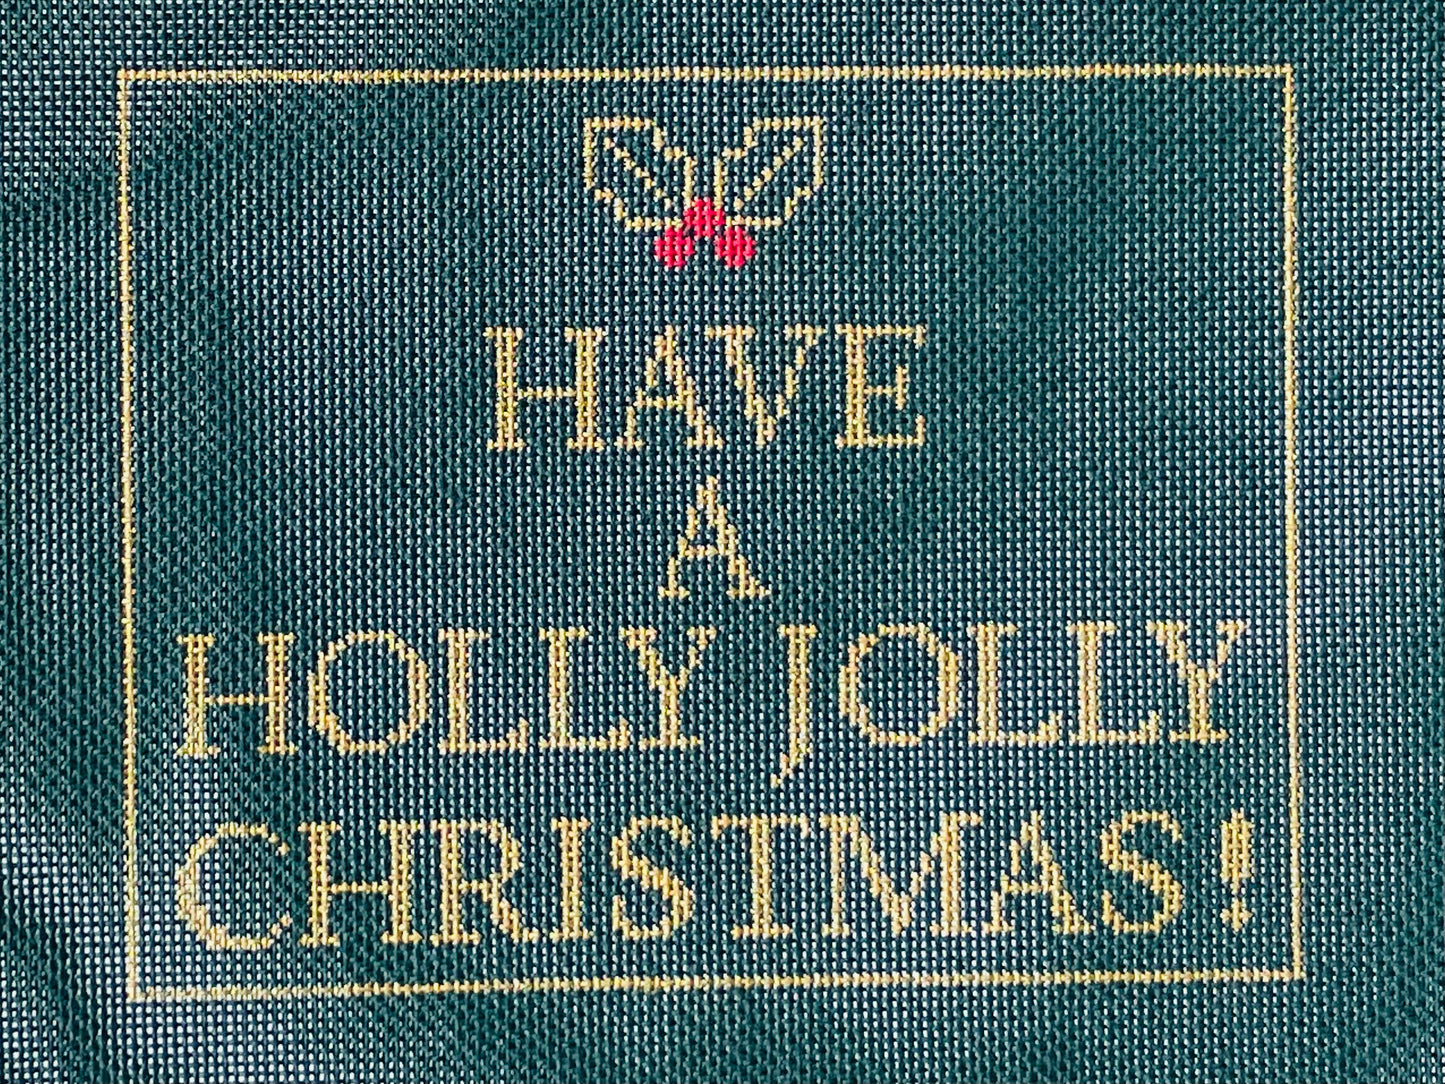 Holly Jolly Christmas!